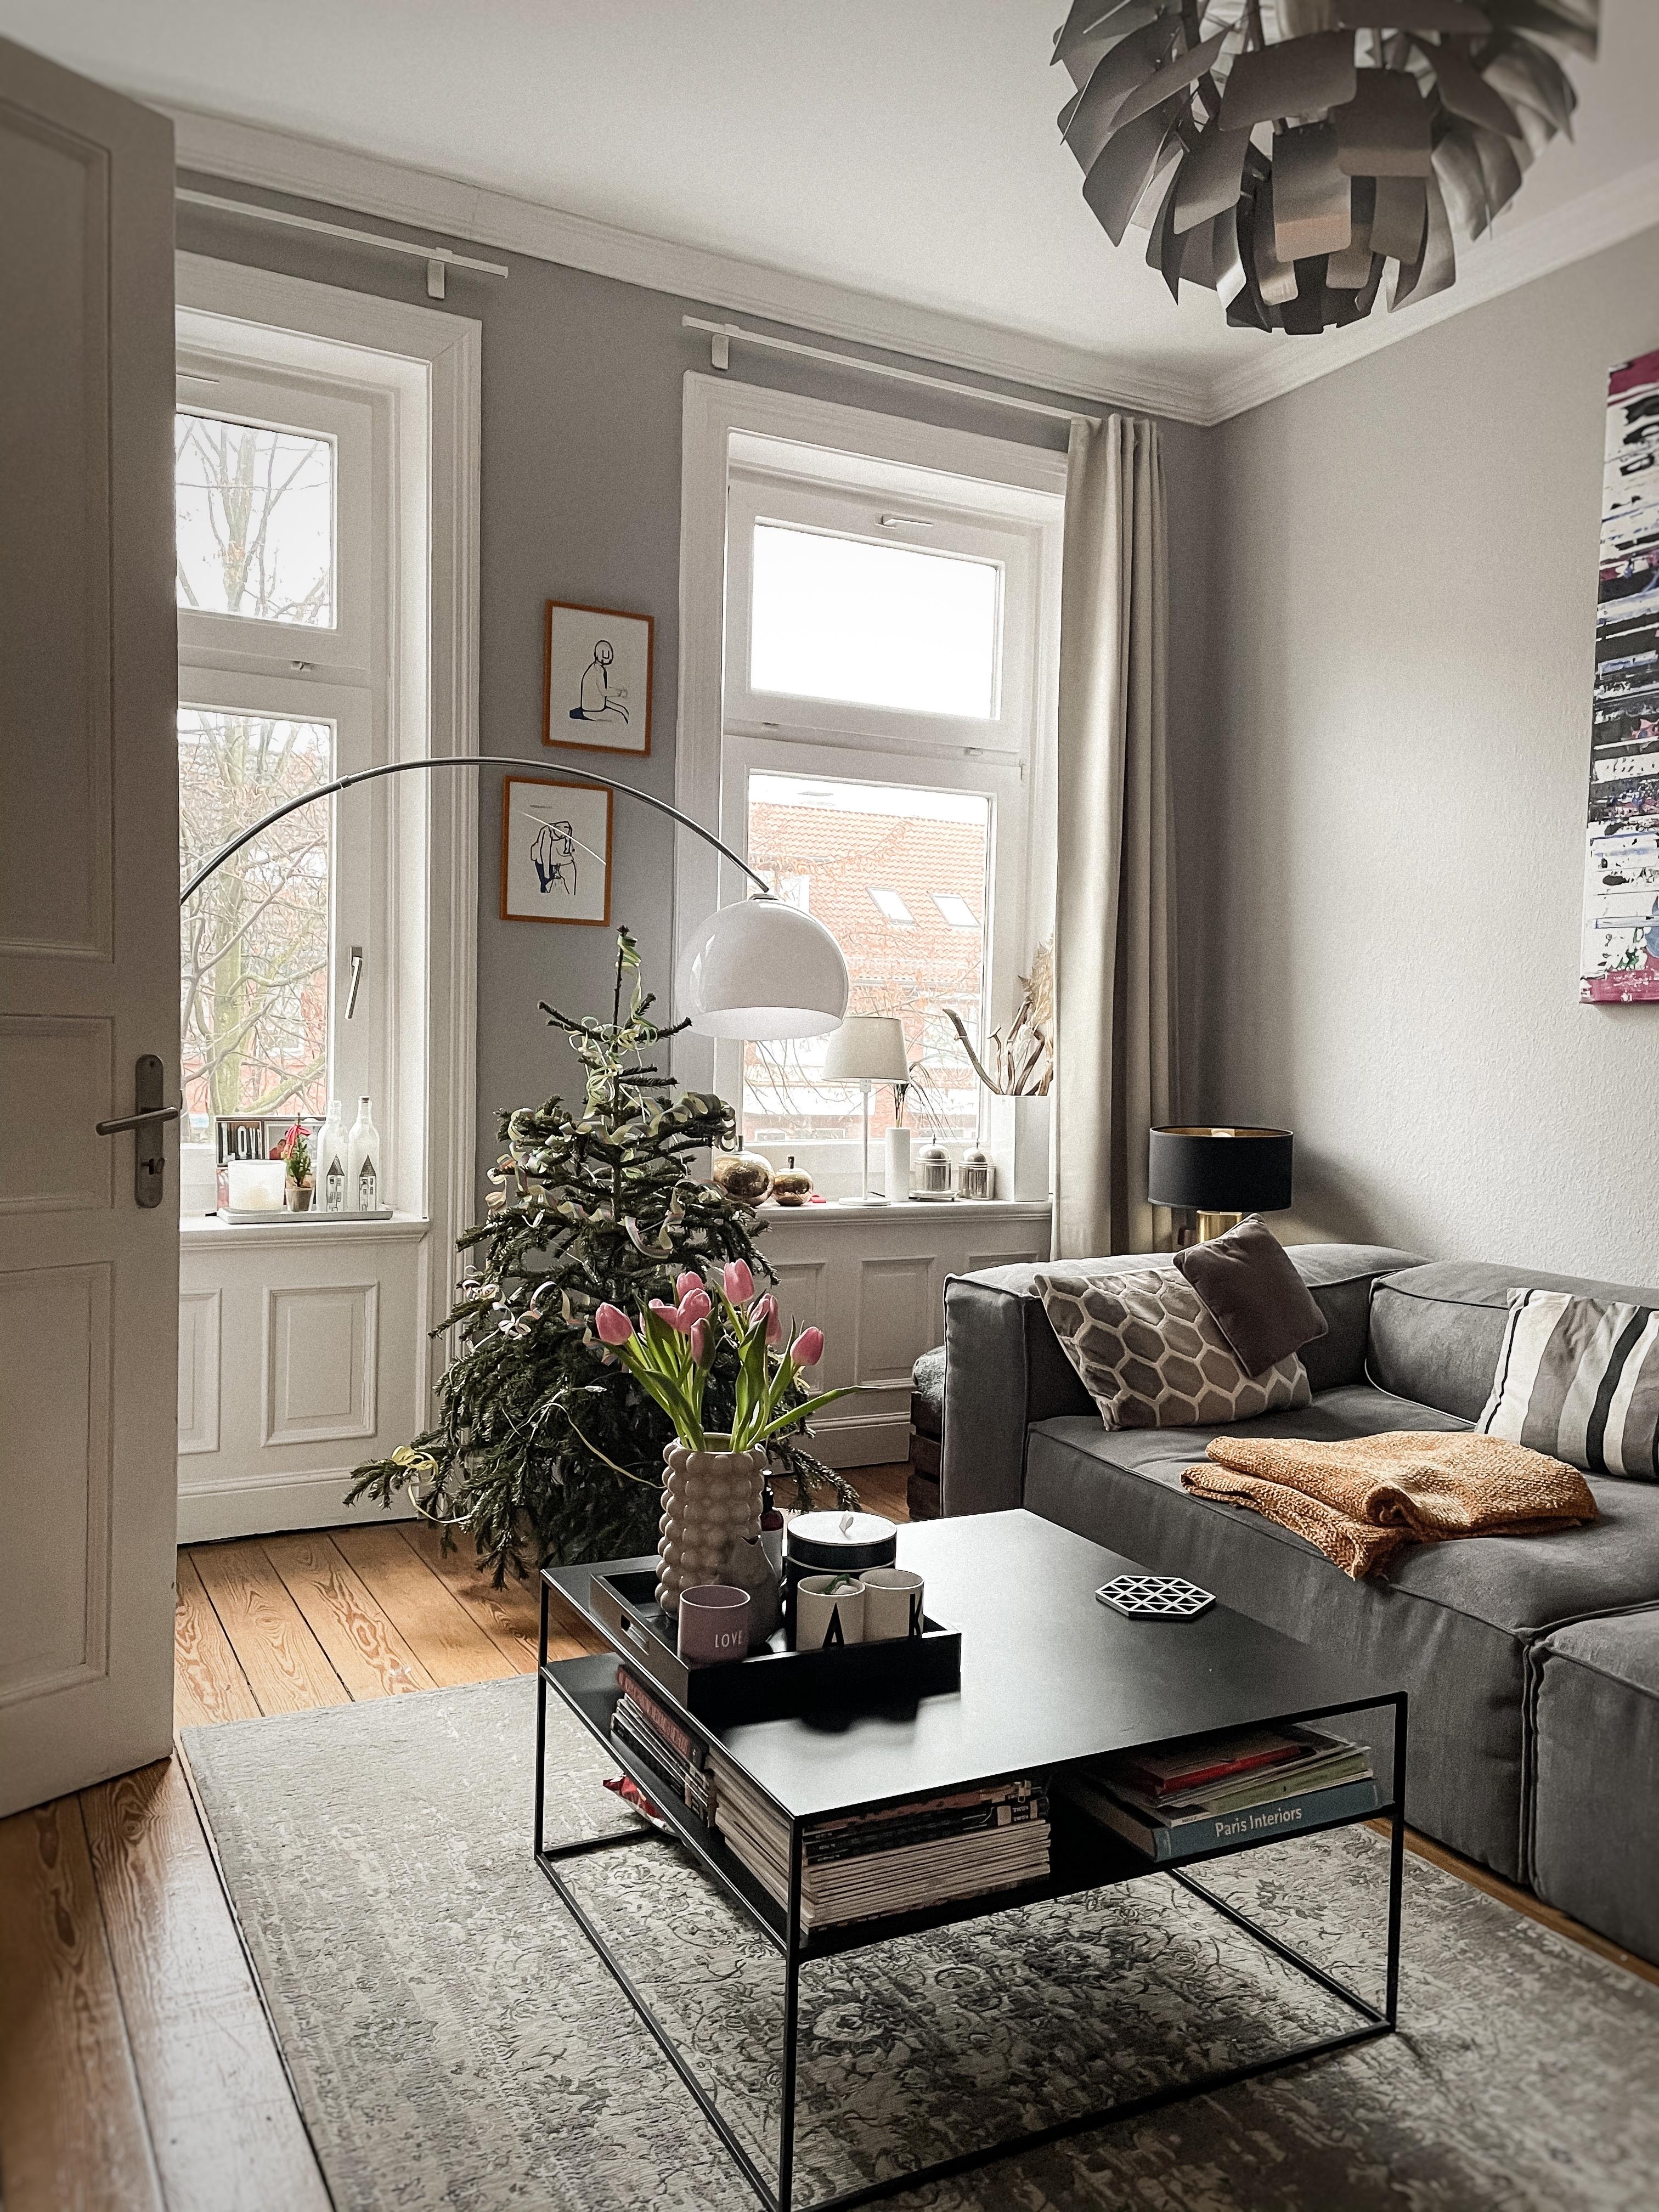 Der Tannenbaum hat Konkurrenz von frischen Tulpen bekommen #nordicliving #interior #interiorstyle #minimalstyle #couch